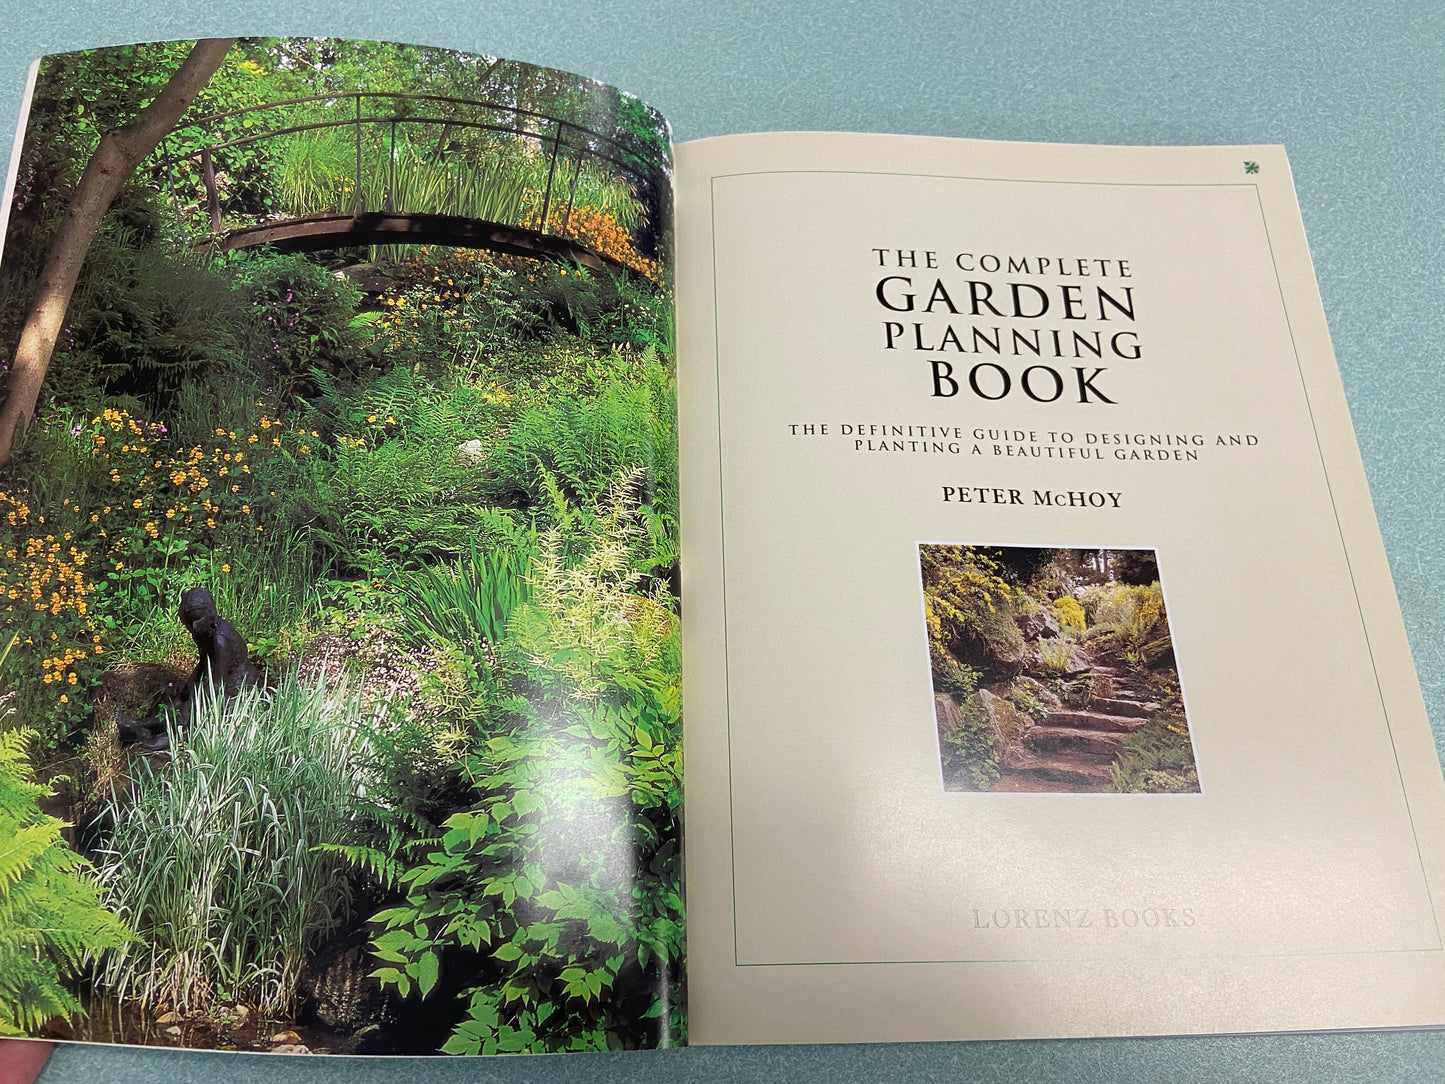 Vintage Garden Book - The Complete Garden Planning Book